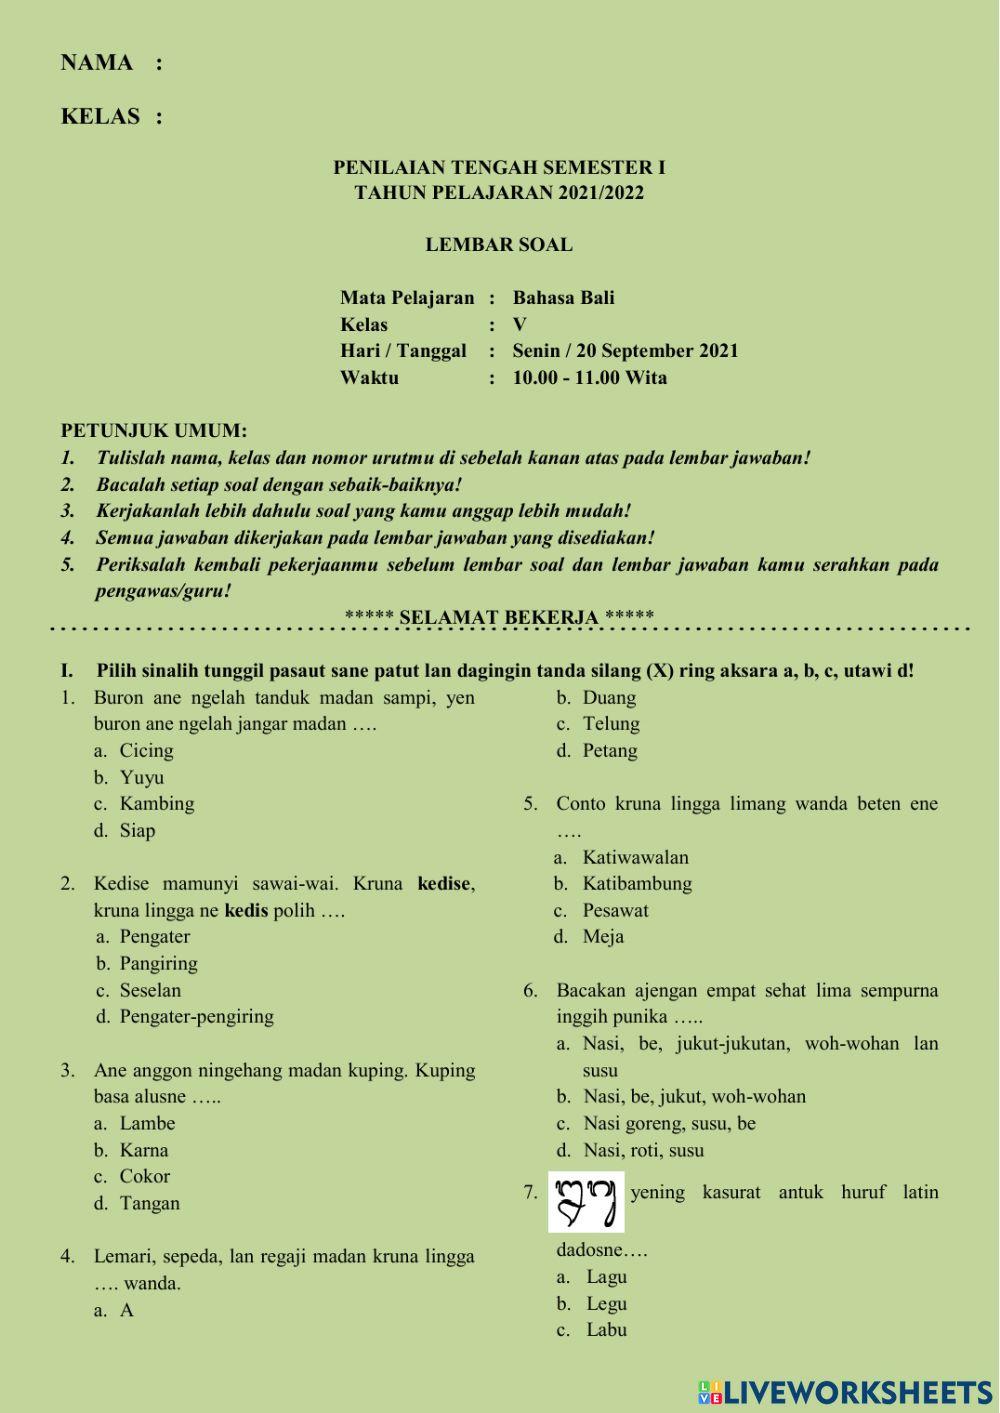 PTS I - Bahasa Bali utk kelas 5